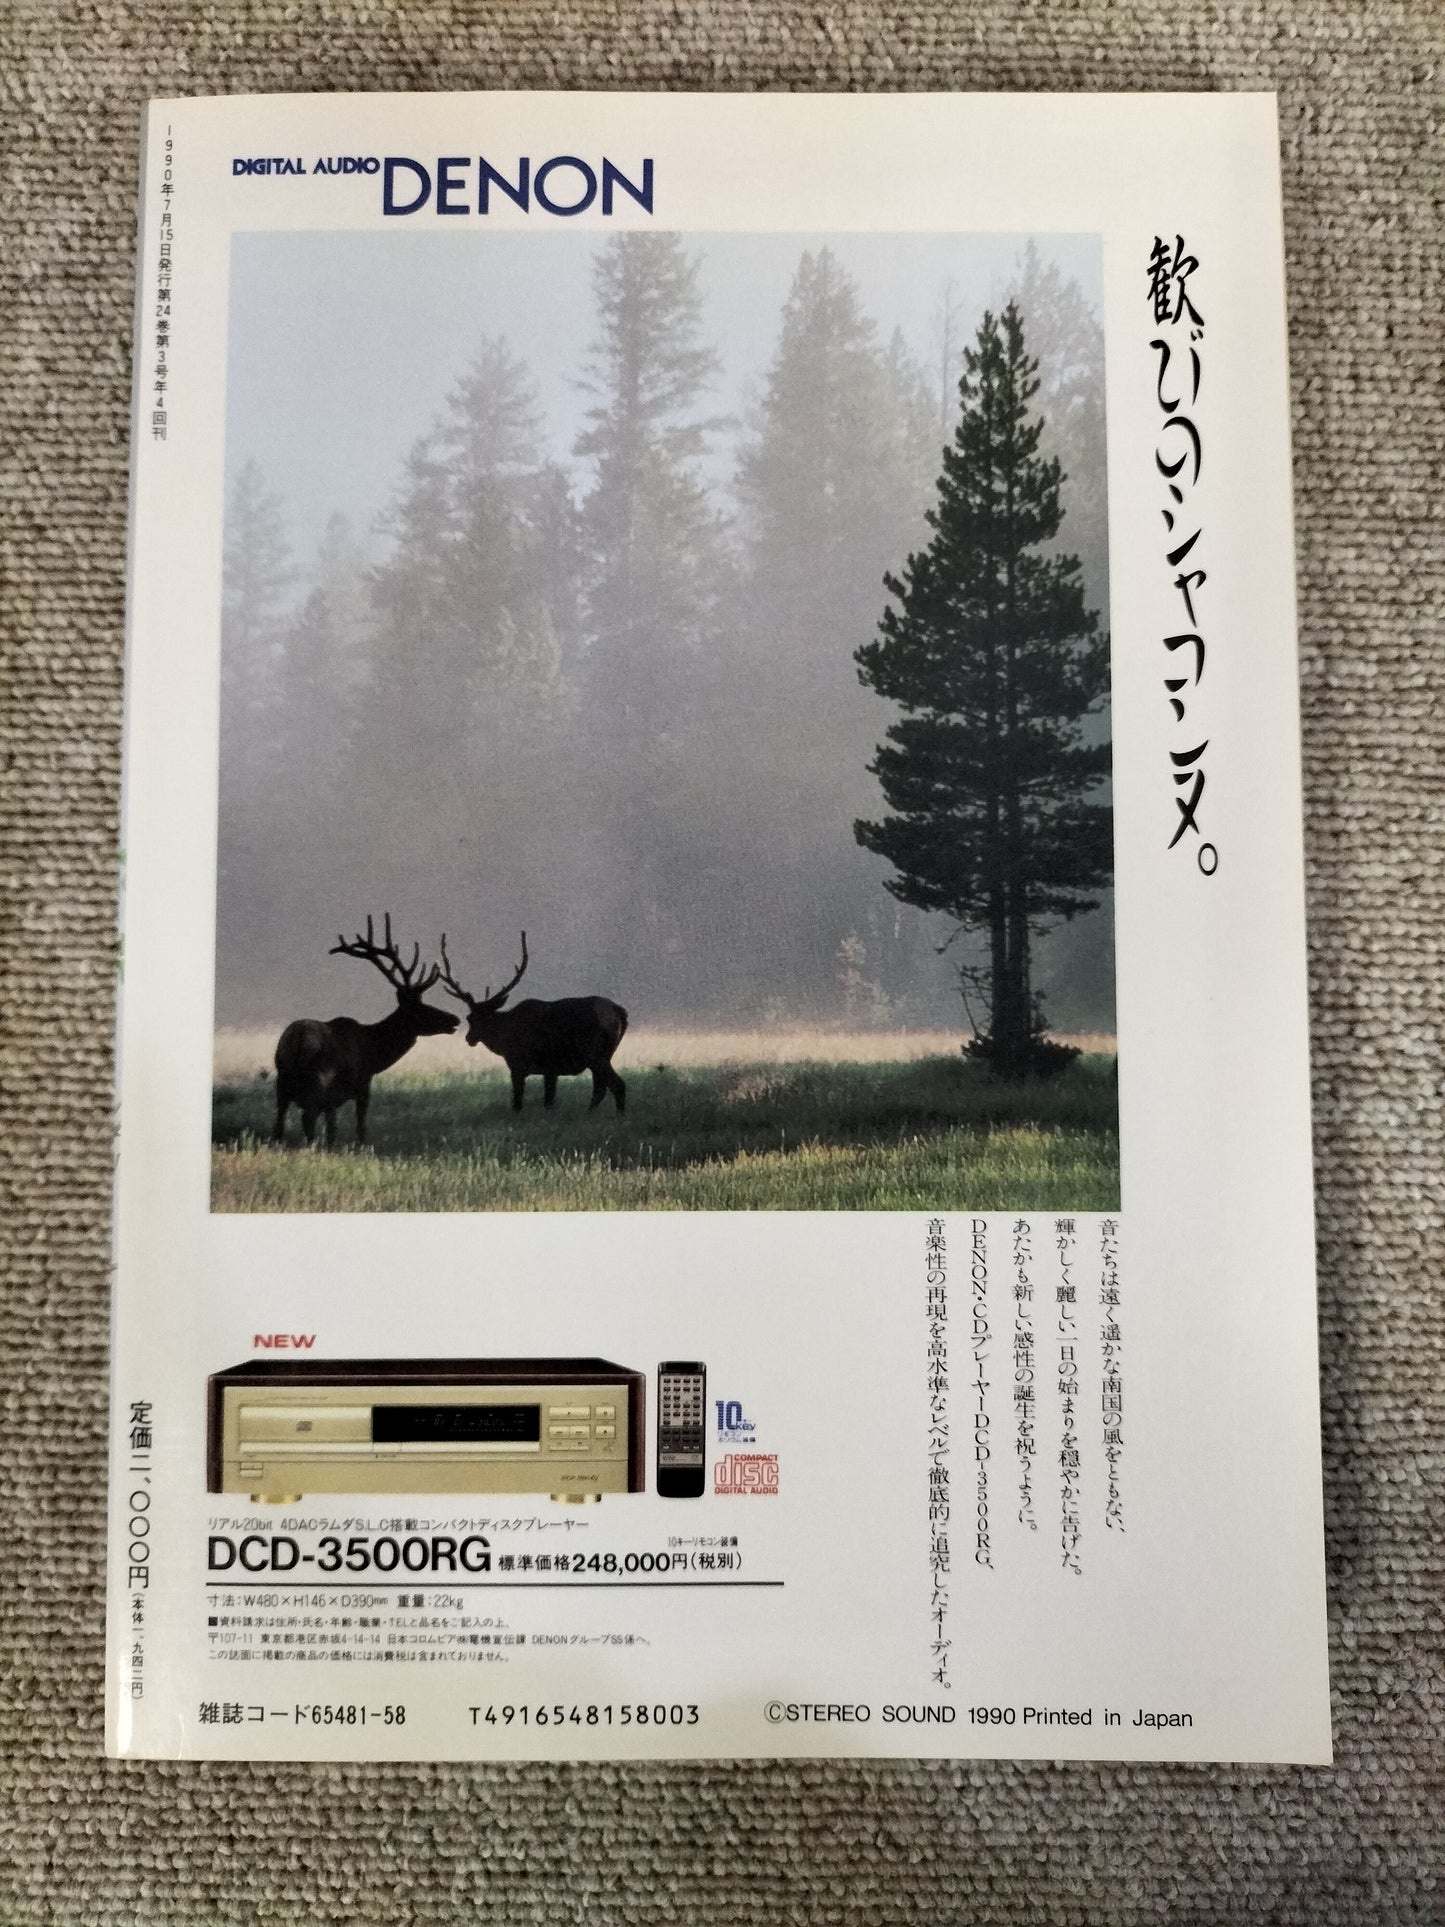 Stereo Sound　季刊ステレオサウンド  No.95 1990年夏号　S22112238